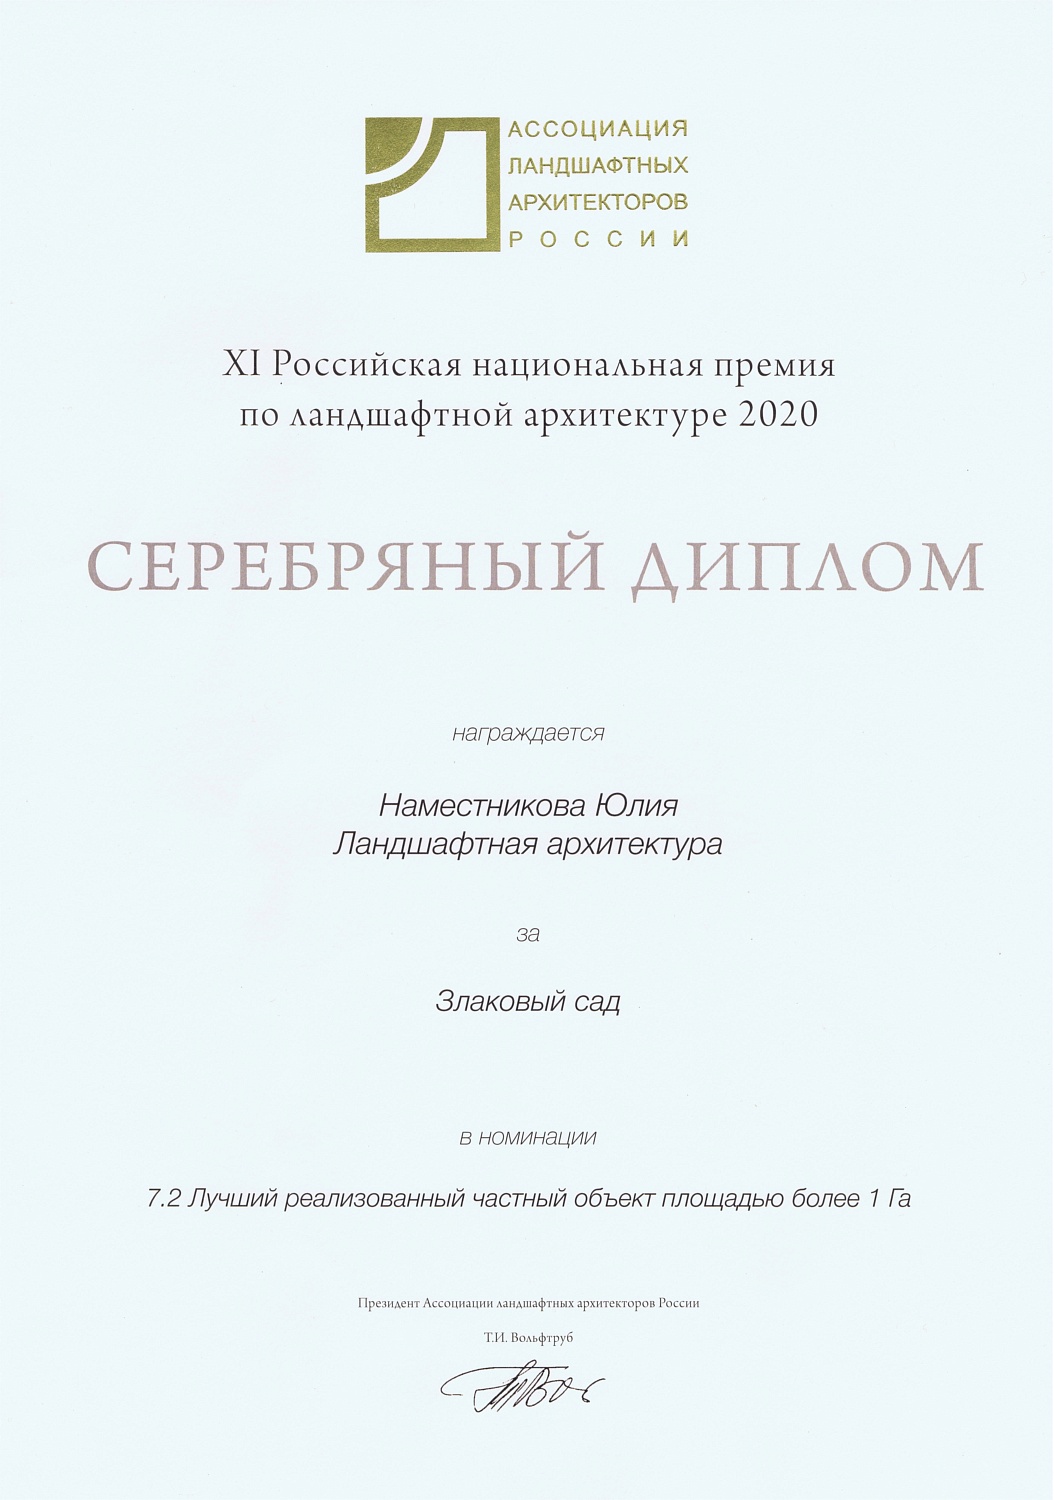 XI Российская национальная премия по ландшафтной архитектуре 2020 - Злаковый сад